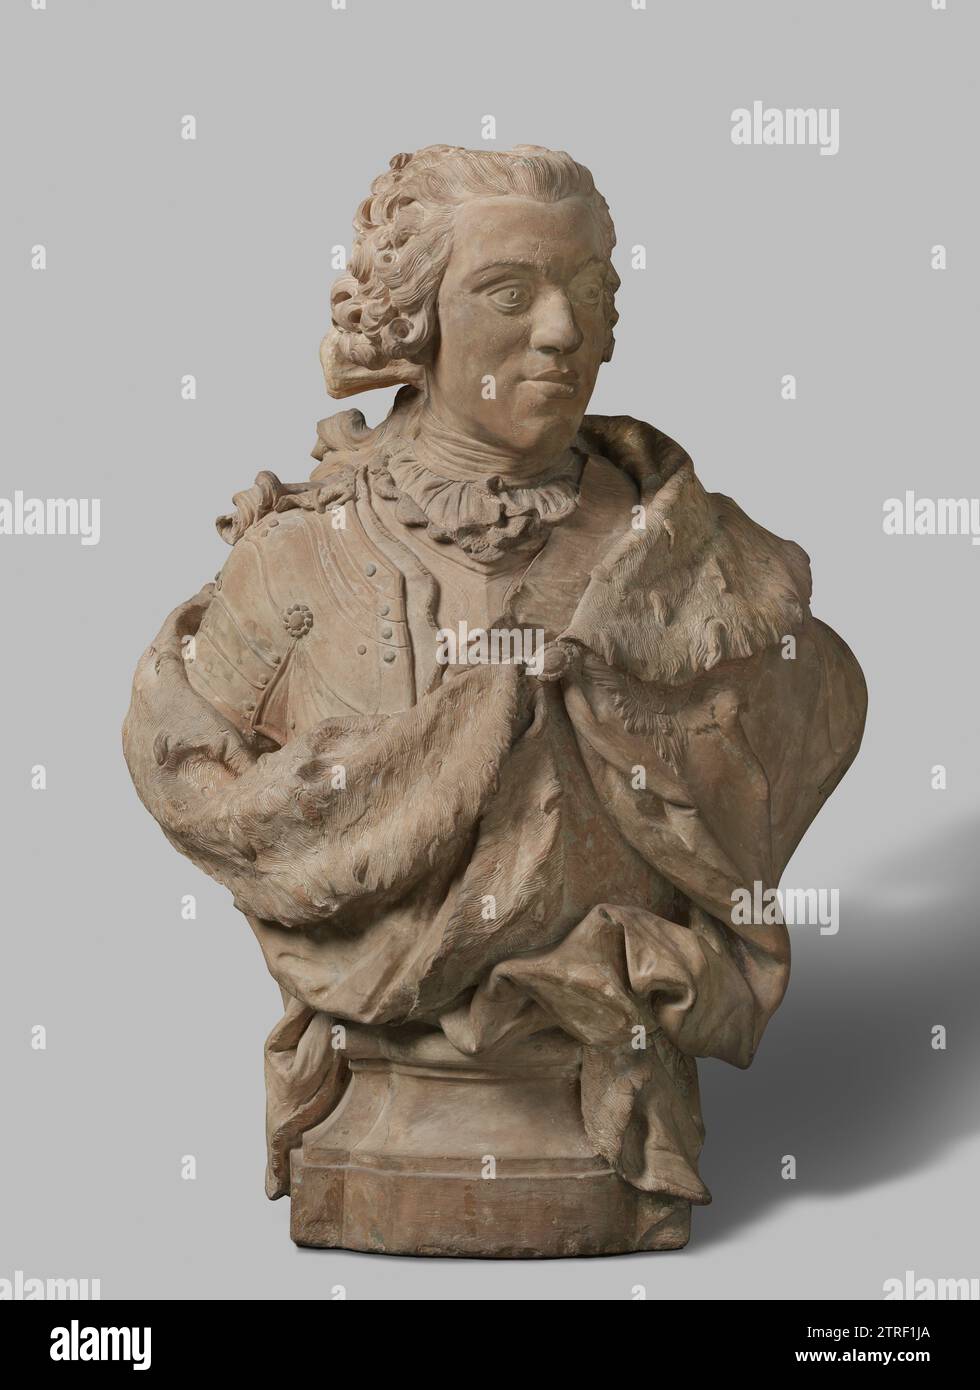 Büste von Wilhelm IV., Jan Baptist Xavery, 1733 der Prinz hat den Kopf drei Viertel nach rechts, trägt eine Perücke, deren Locken teilweise nach hinten hängen und durch eine Schleife am Hals zusammengebunden sind. Über einem dünnen, fein gefalteten Hemd mit Jabot, von dem nur der gelappte Oberrand des Innenfutters zu sehen ist, ein Kuras. Von der linken Schulter aus ist der mit Hermelin gefütterte Mantel, einschließlich des Riemens der Strumpfhose, teilweise verborgen. Die entsprechende Dekoration mit Honi [soit qui mal y pense] ist teilweise auf dem Mantel sichtbar, der von vorne durch ein Edelstein geschlossen wird und von ei abhängt Stockfoto